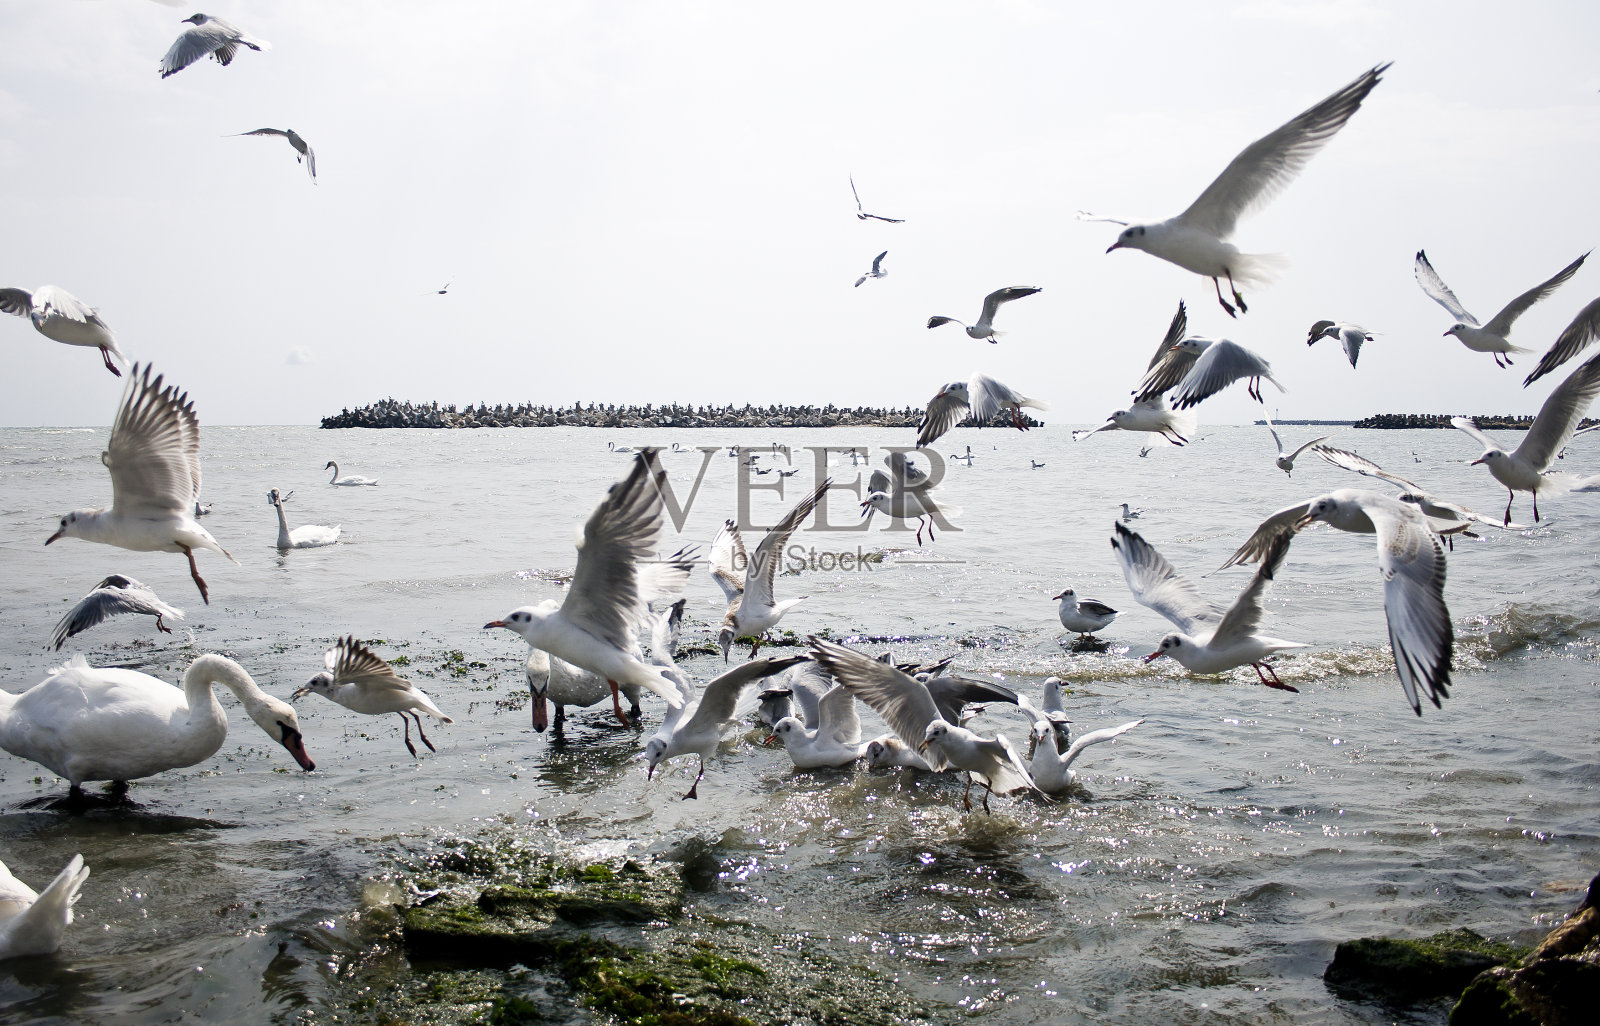 天鹅和海鸥的打斗场面过于拥挤照片摄影图片